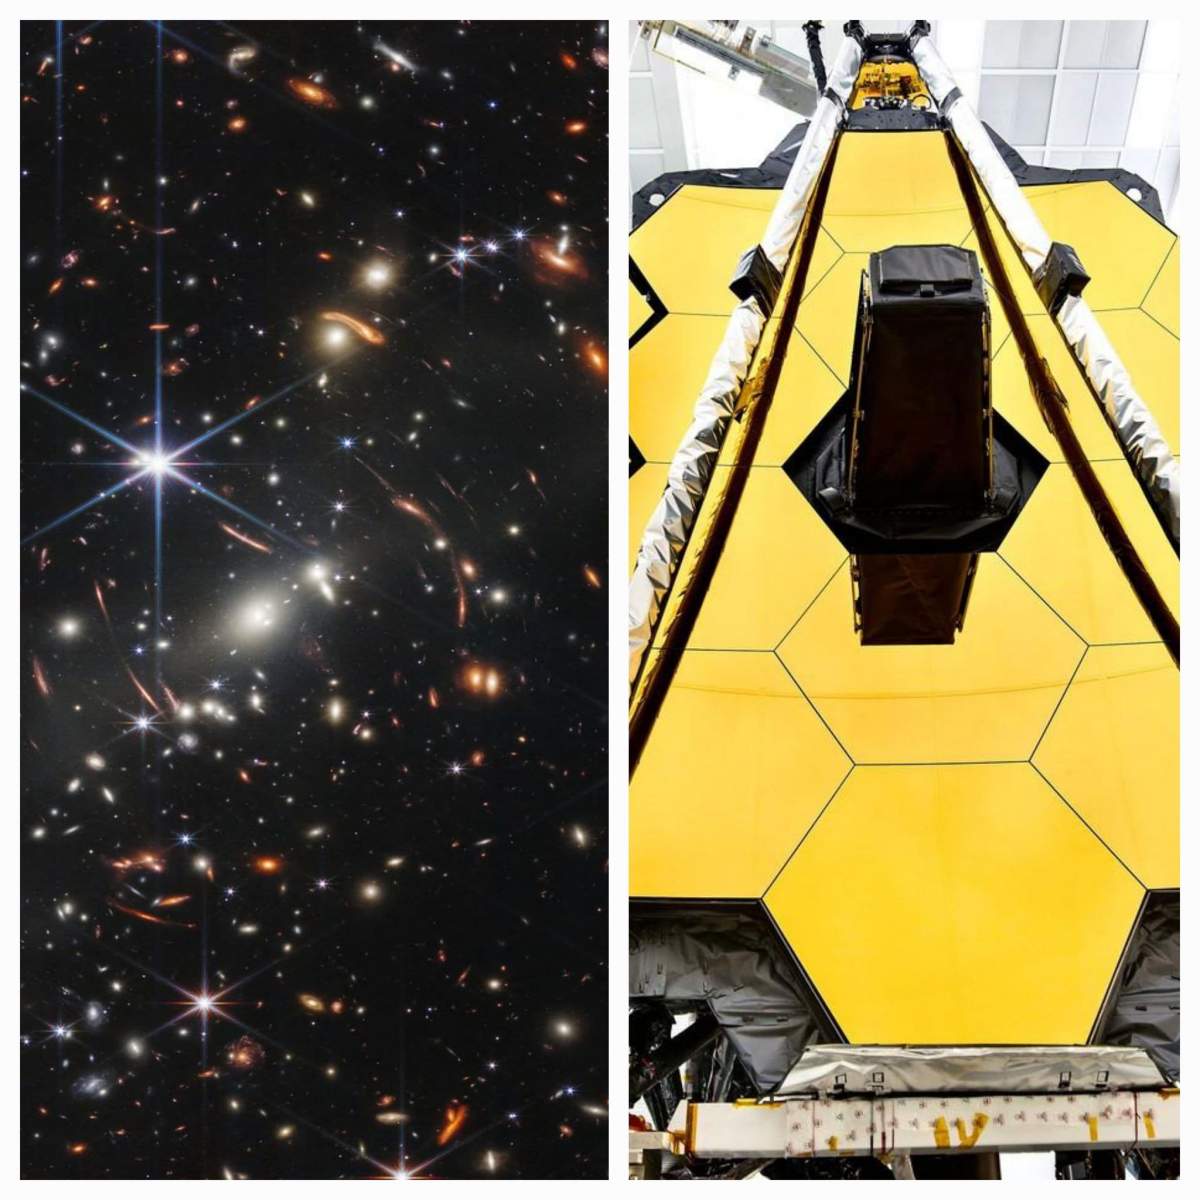 Prima imagine din spațiu, realizată cu noul telescop James Webb. Cum arată galaxiile formate la scurt timp după Big Bang